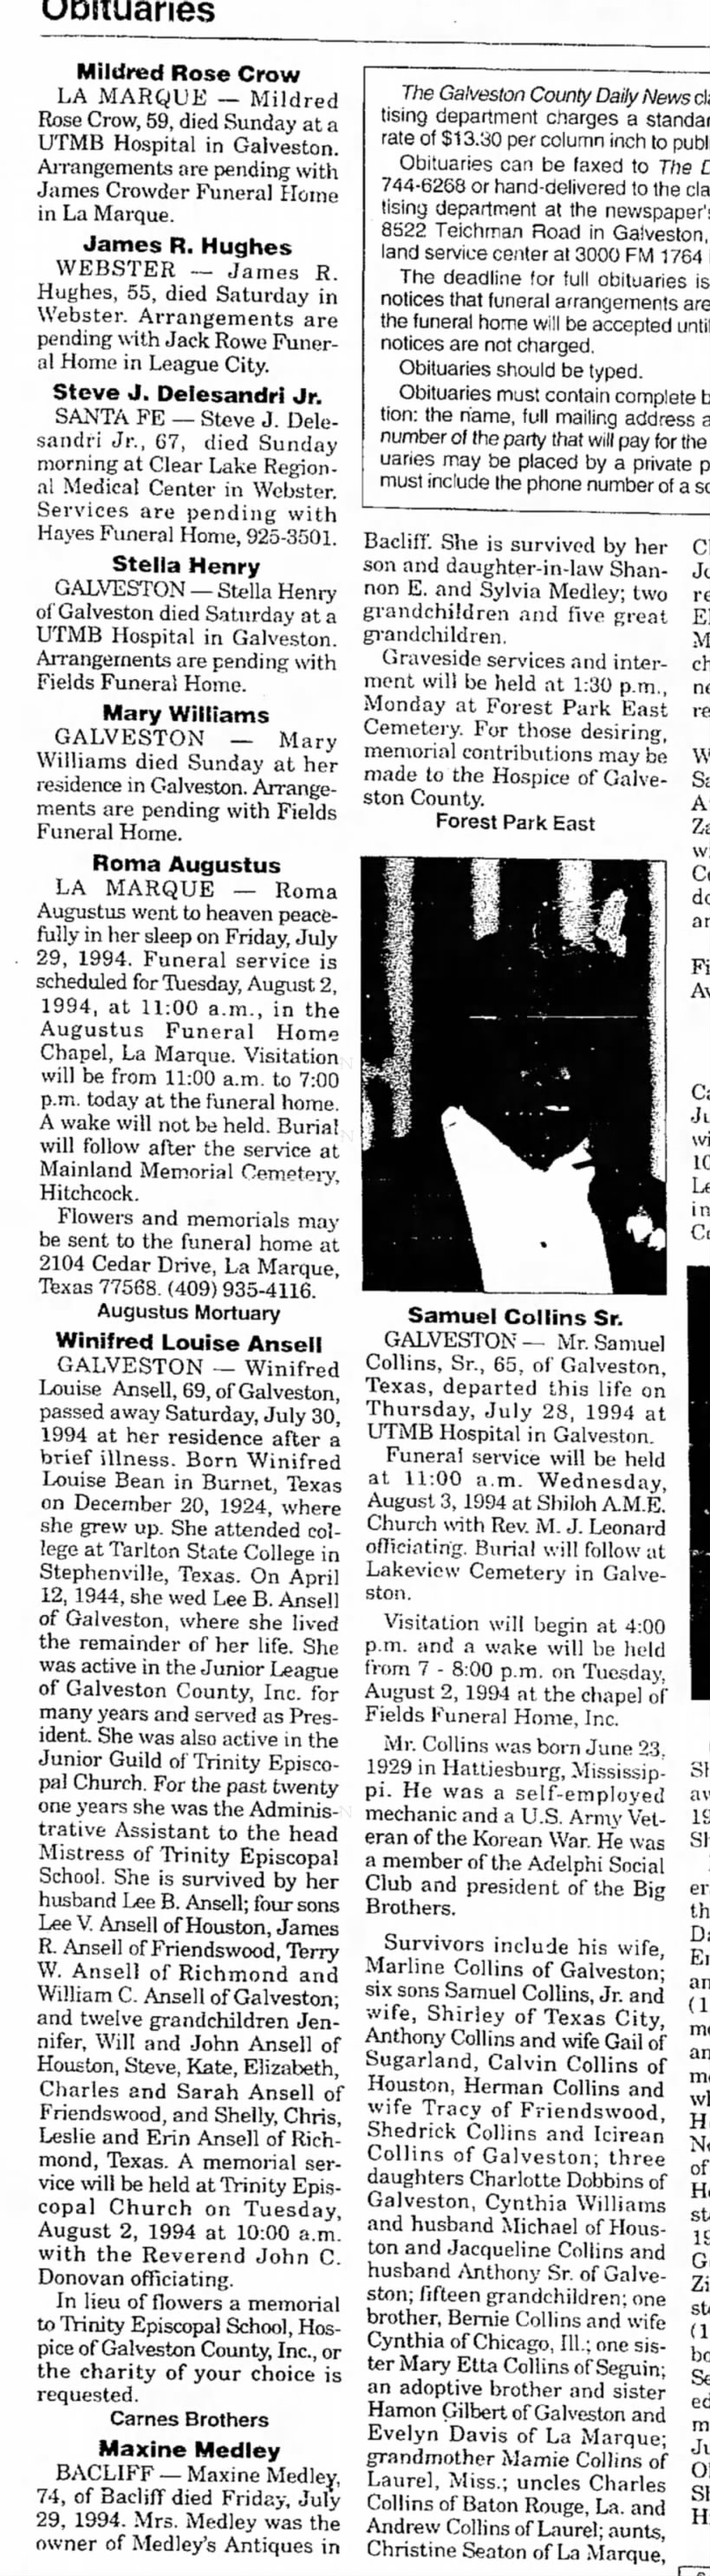 obituary of Maxine Medley